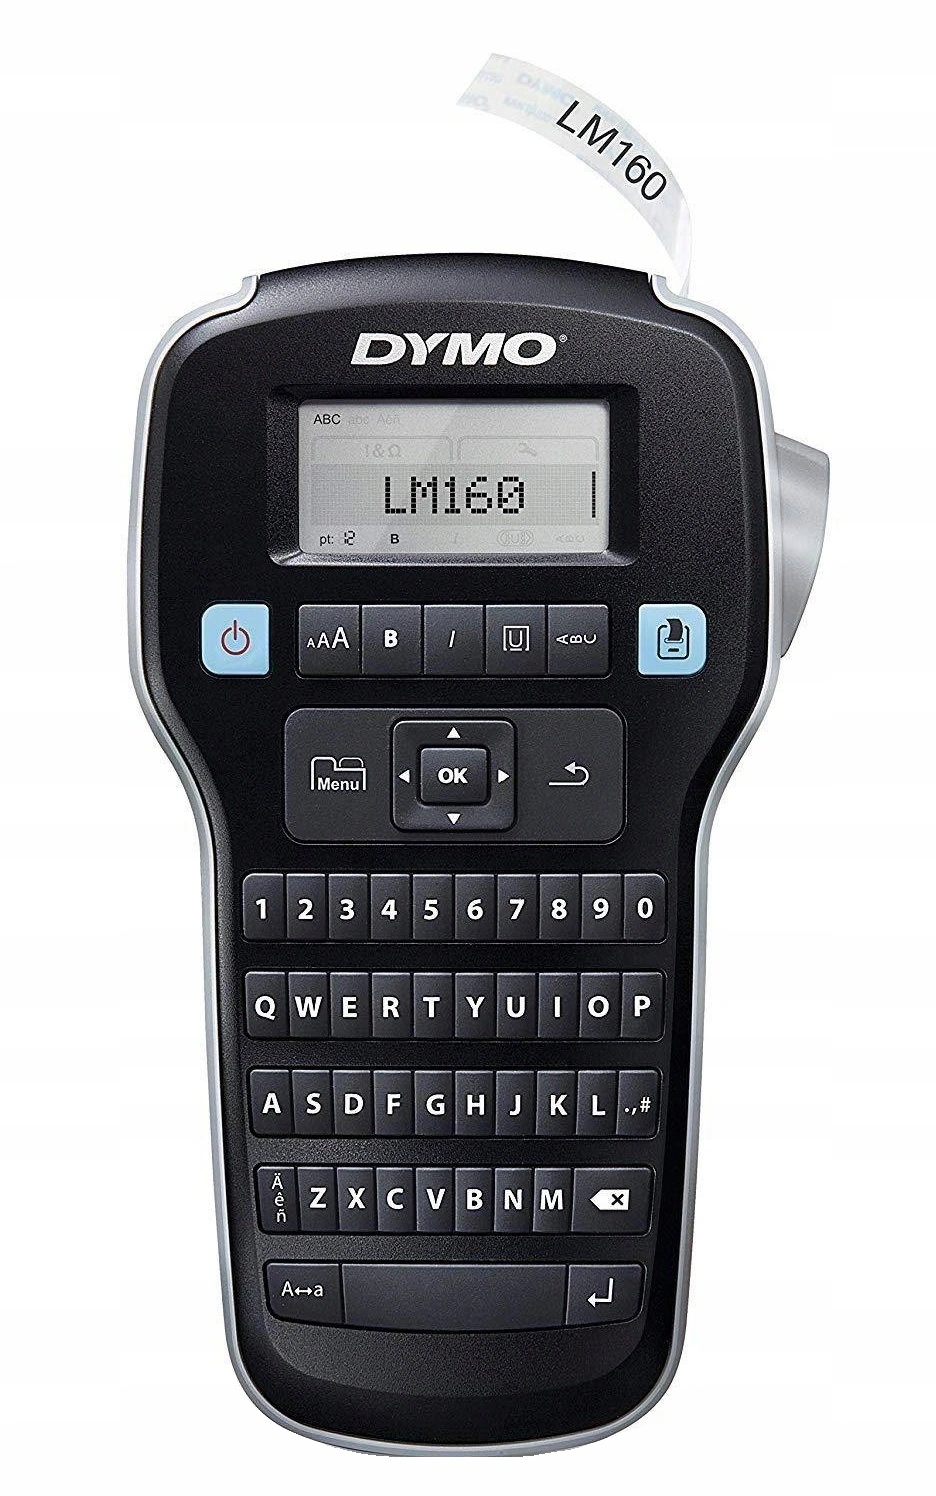 DYMO DY LM 160